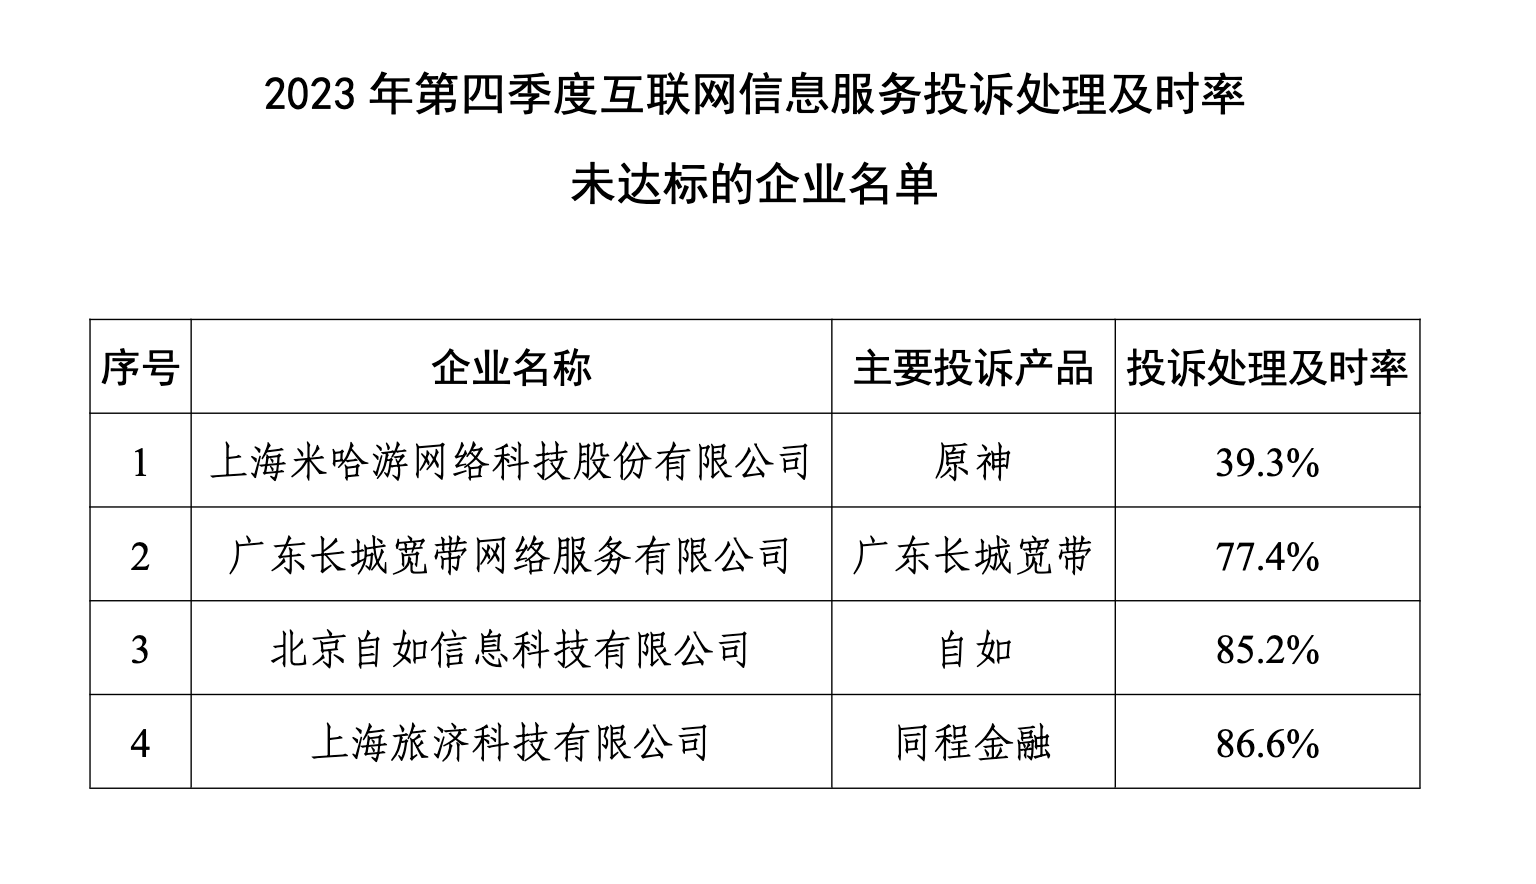 刘伟任董事长不足半年,米哈游遭工信部点名,投诉处理及时率太低